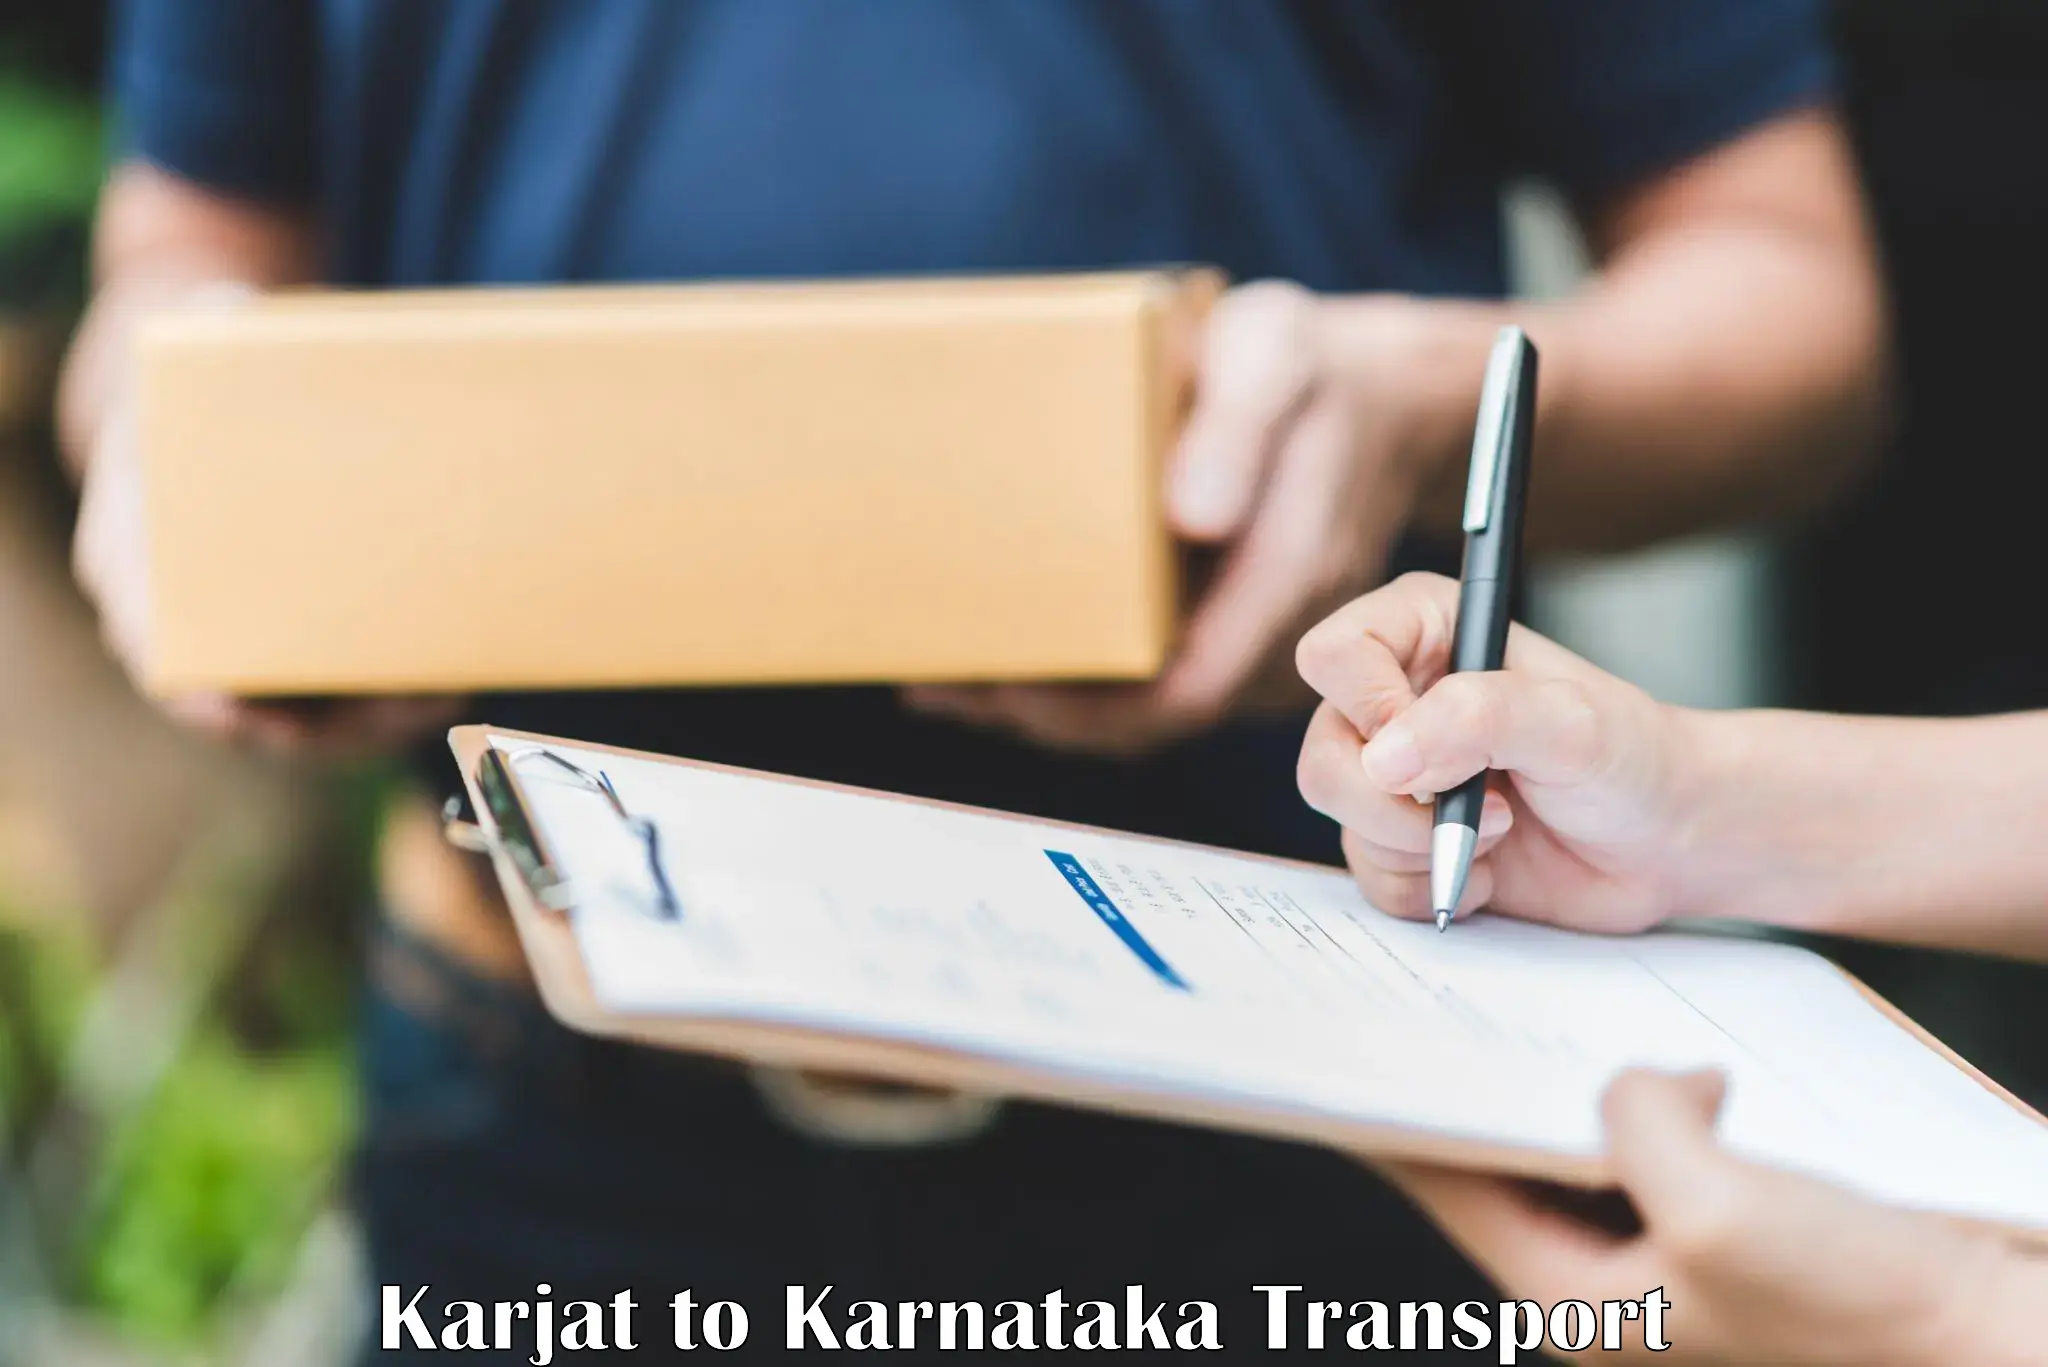 Express transport services Karjat to Bailhongal